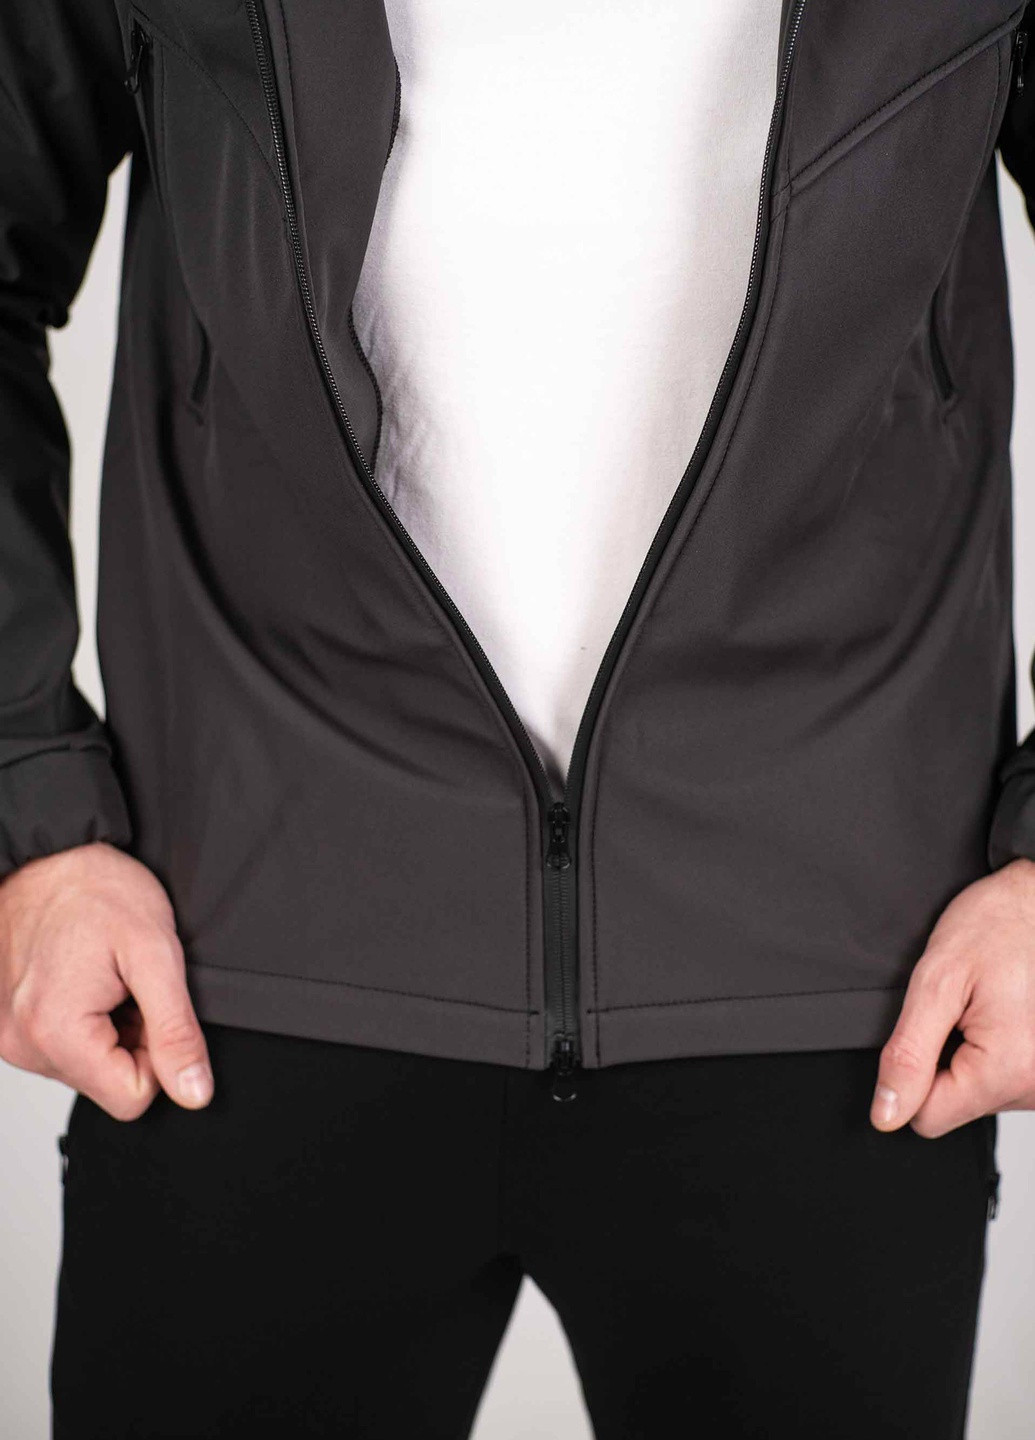 Темно-серая демисезонная куртка мужская protection soft shell dark графит Custom Wear